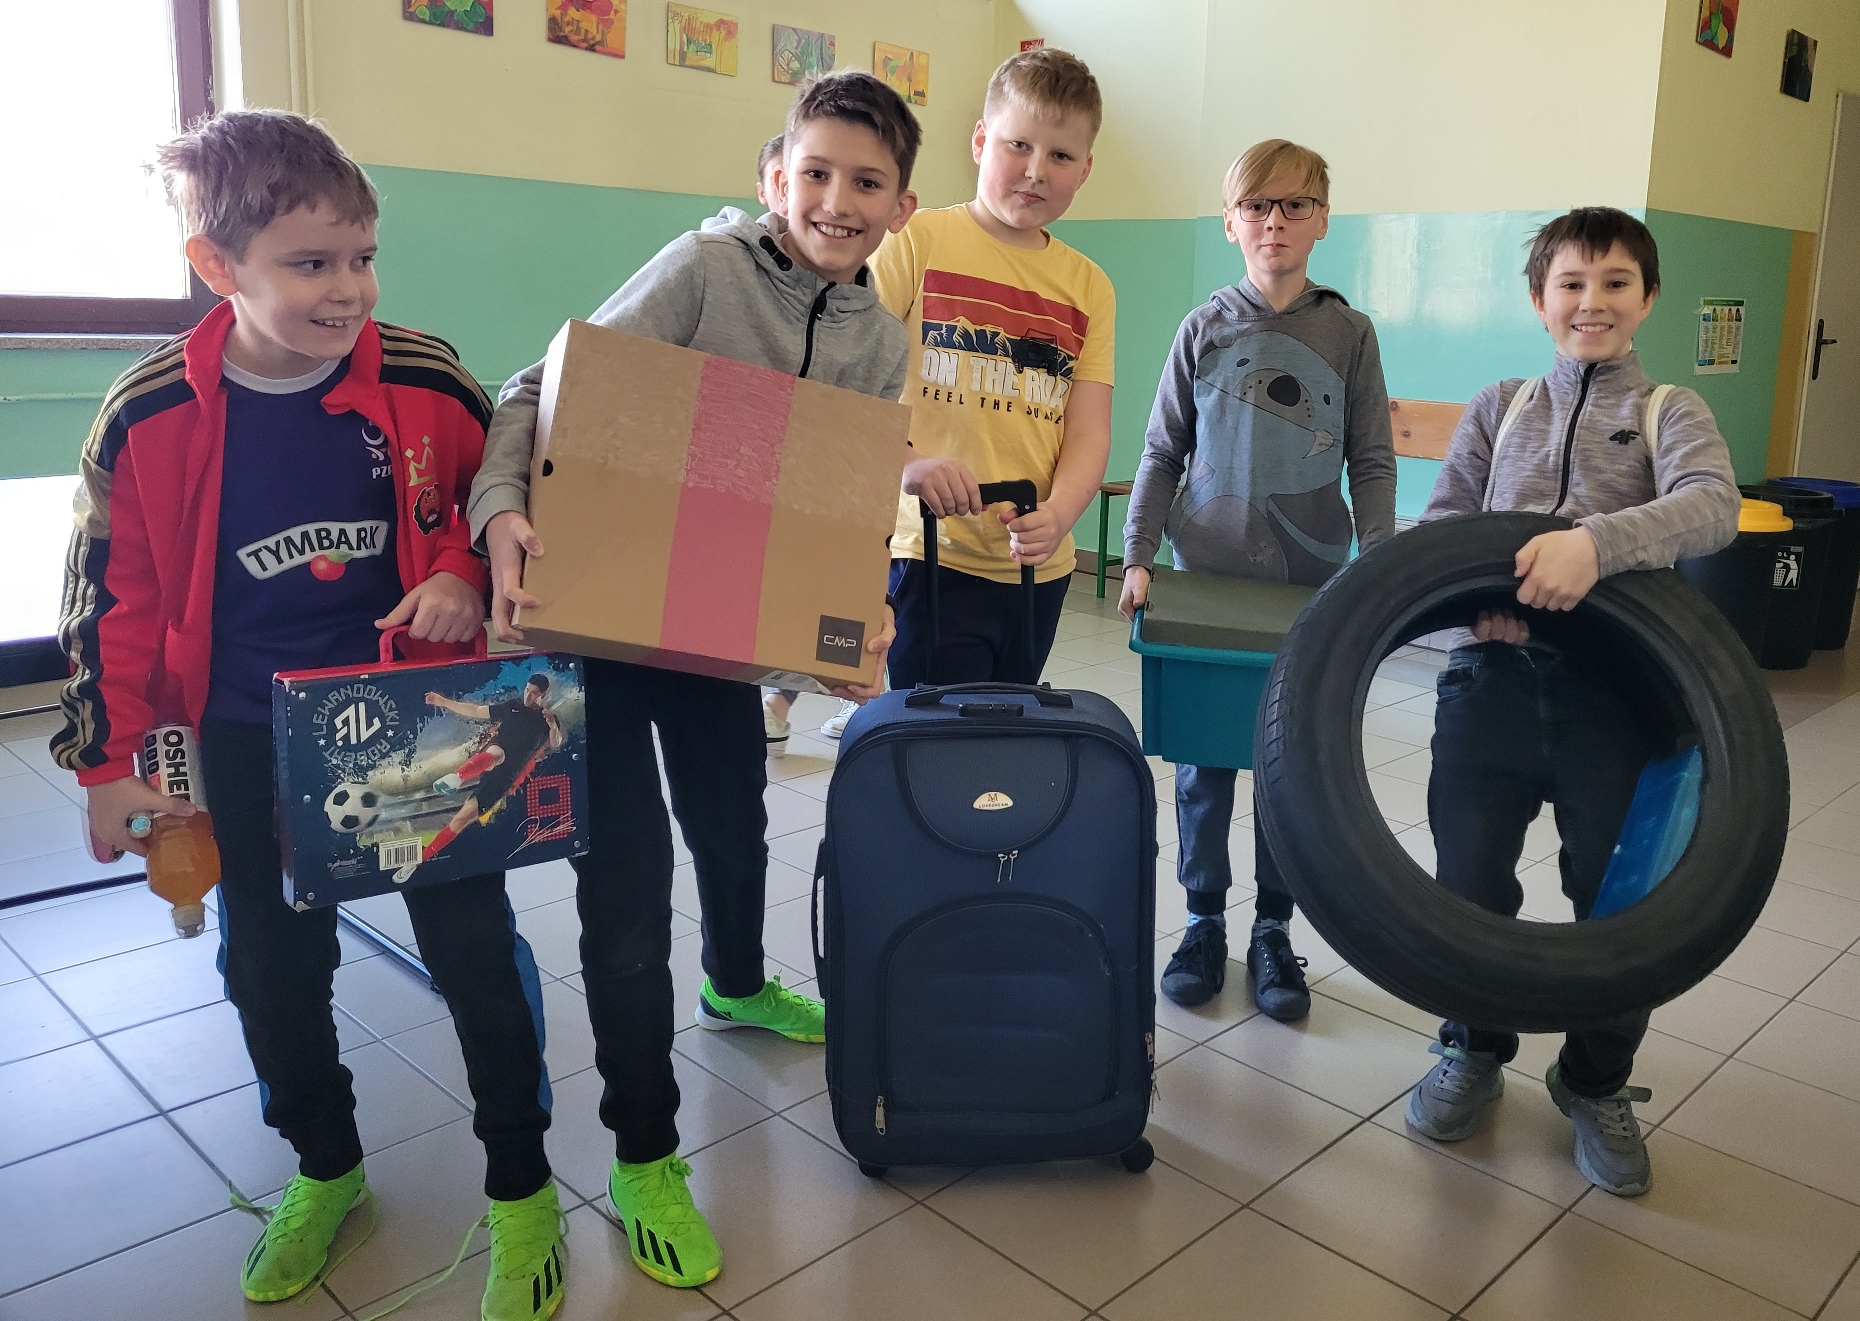 Grupa sześciu chłopców stoi z pudełkiem, walizką i oponą na szkolnym korytarzu.